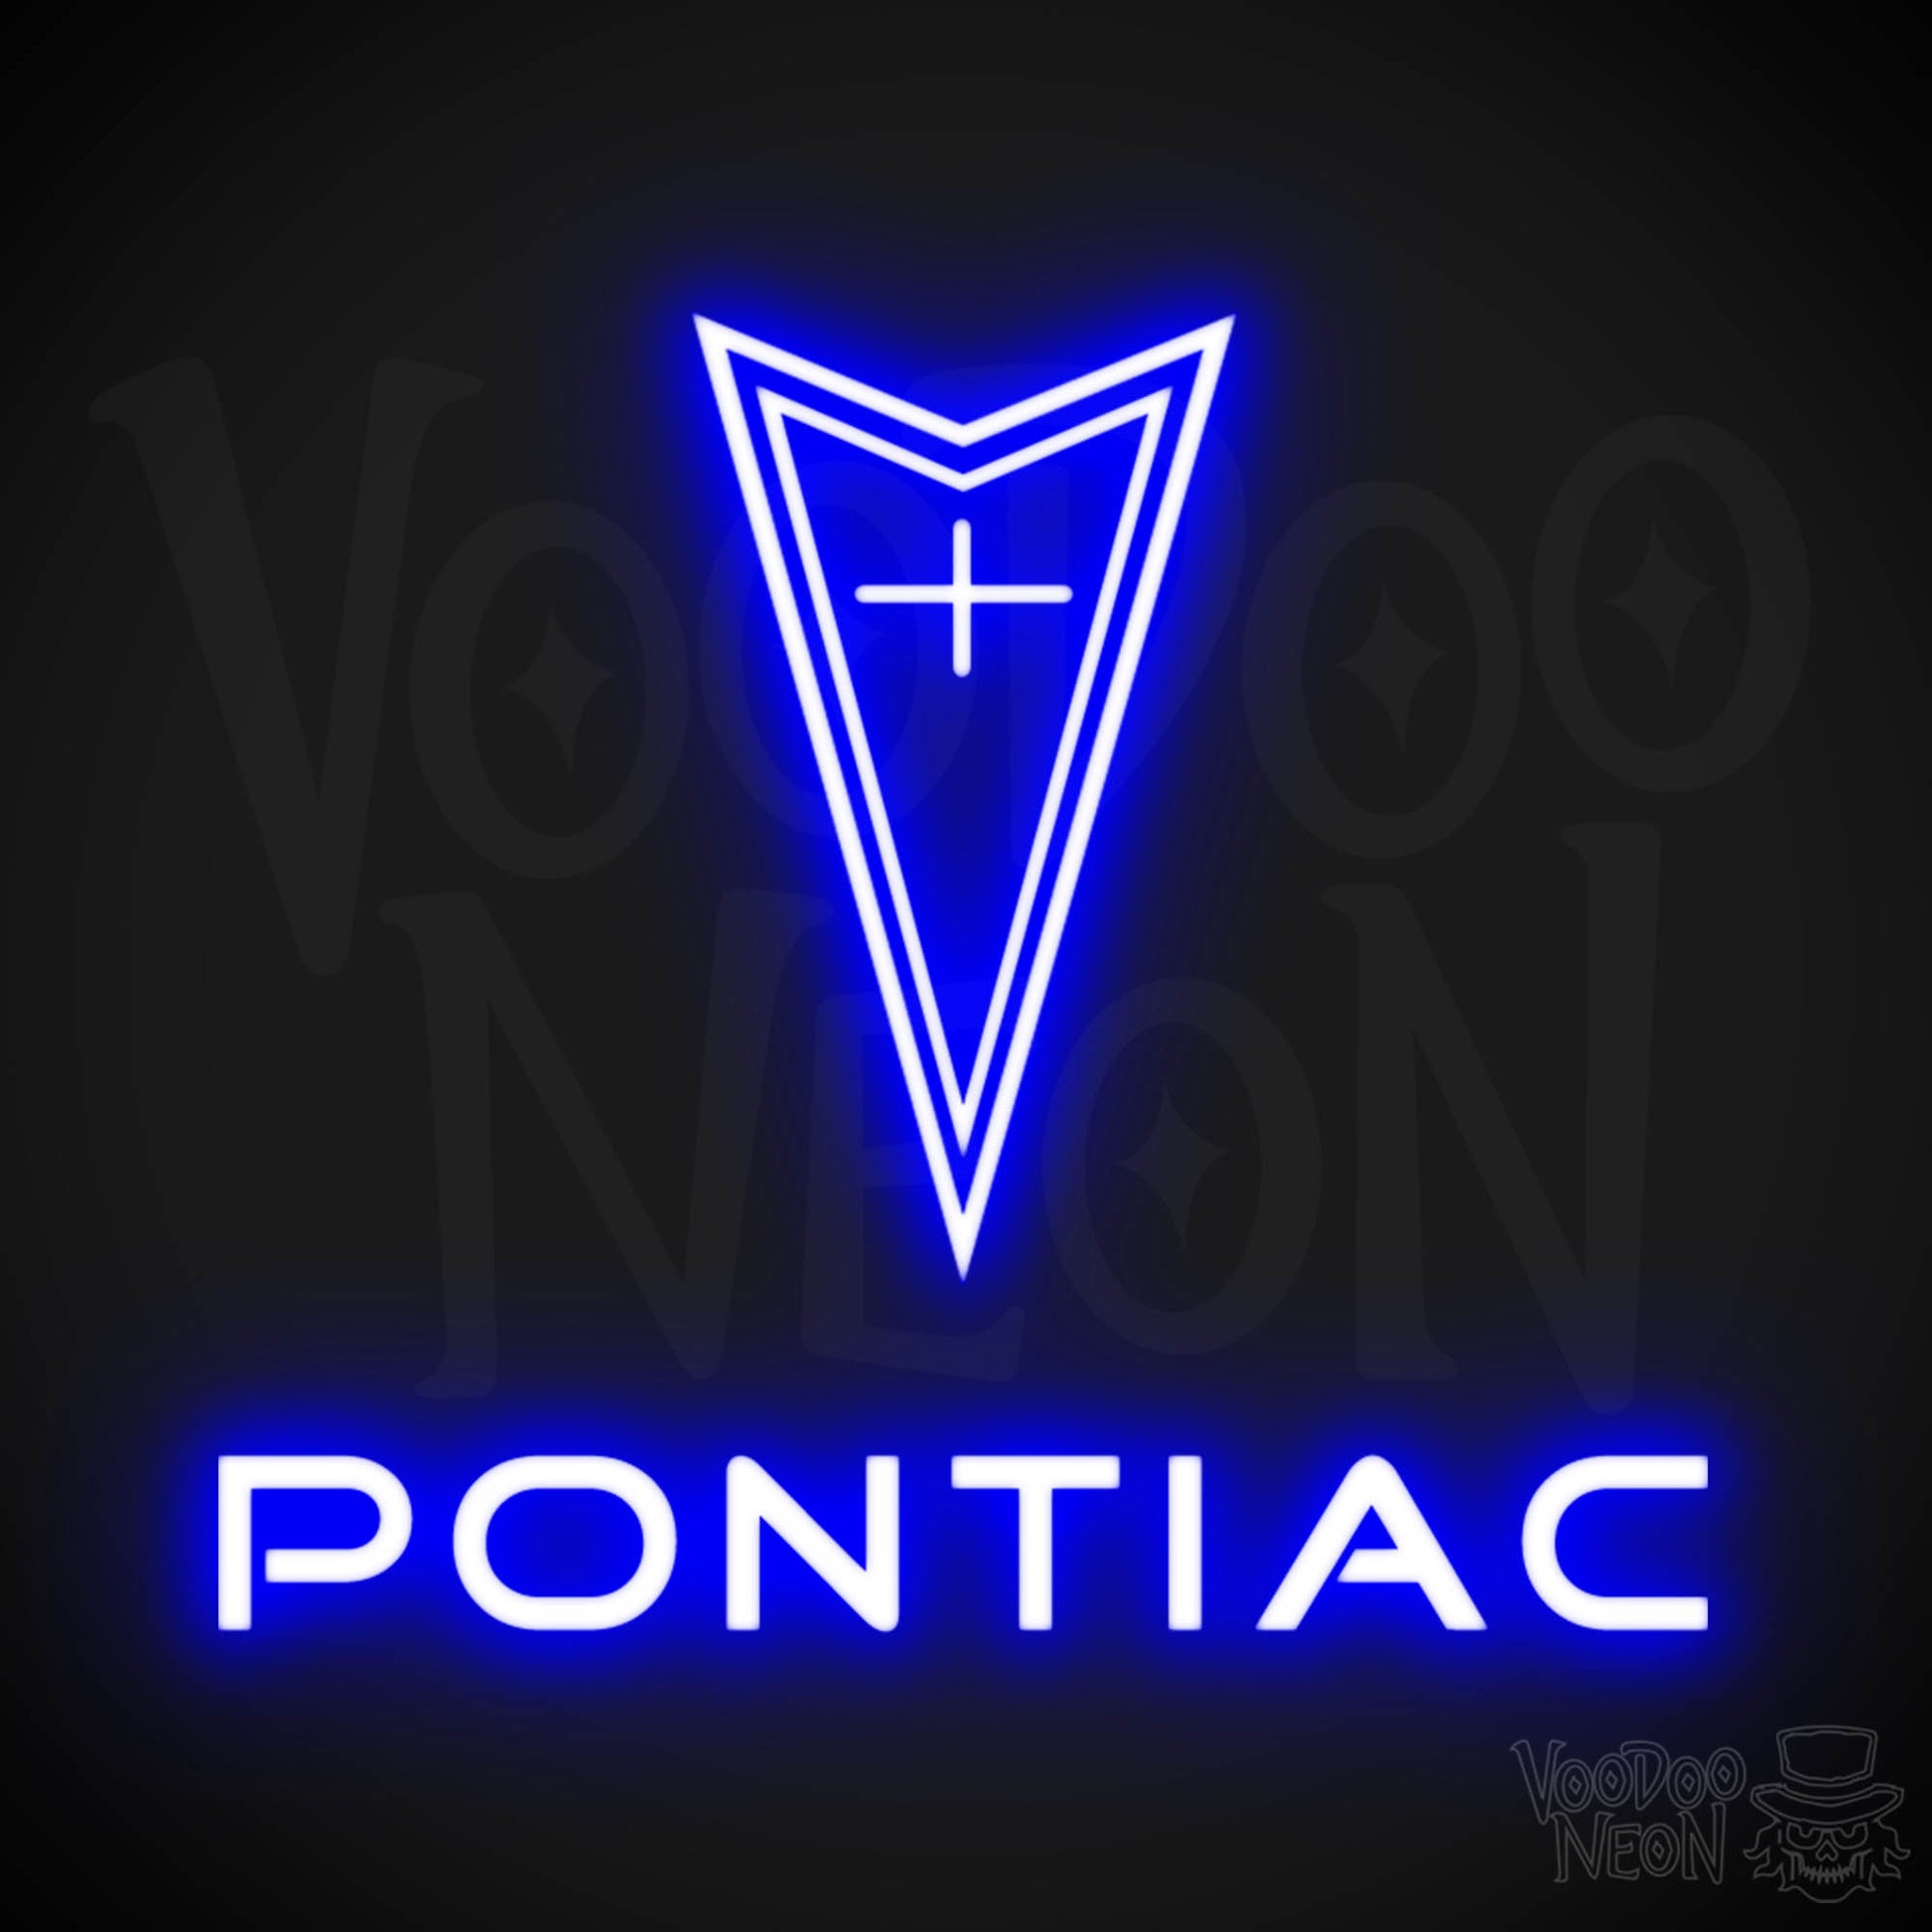 Pontiac Neon Sign - Pontiac Sign - Pontiac Decor - Wall Art - Color Dark Blue